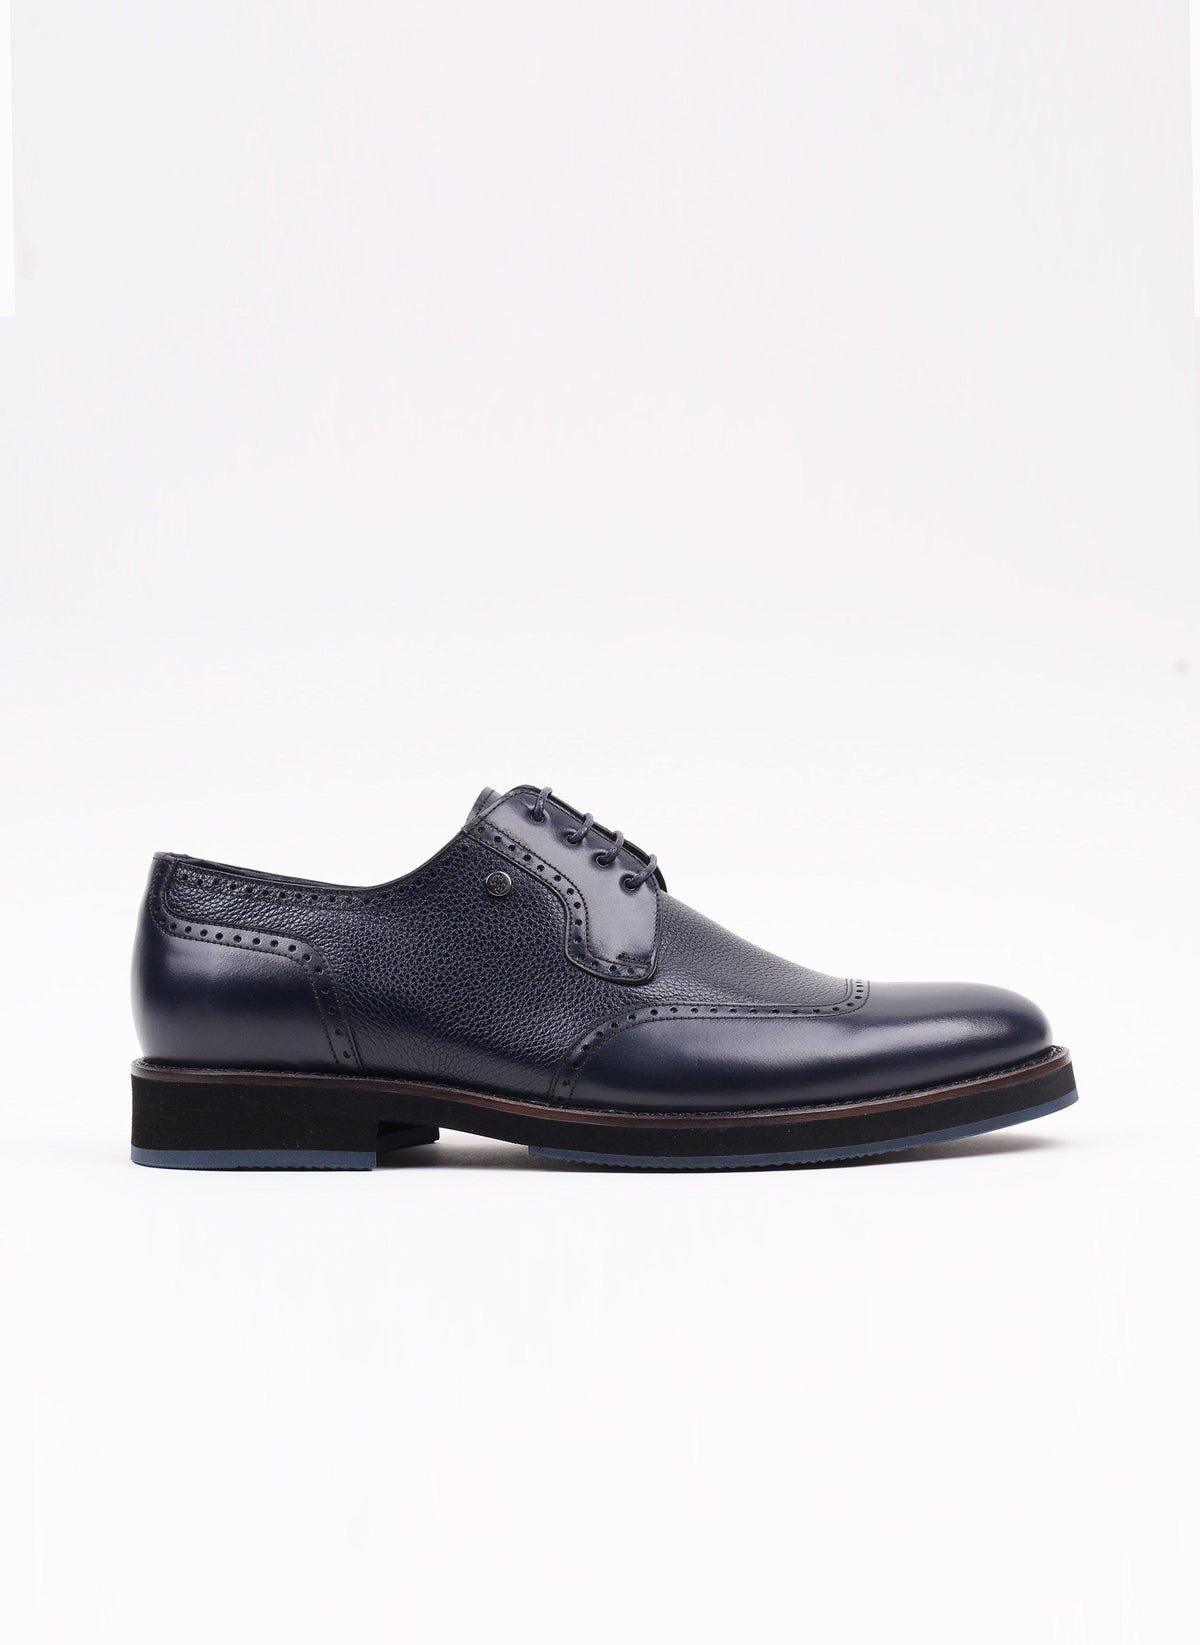 Lacivert Flother Baskı Erkek Klasik Ayakkabı - Oggi Shoes